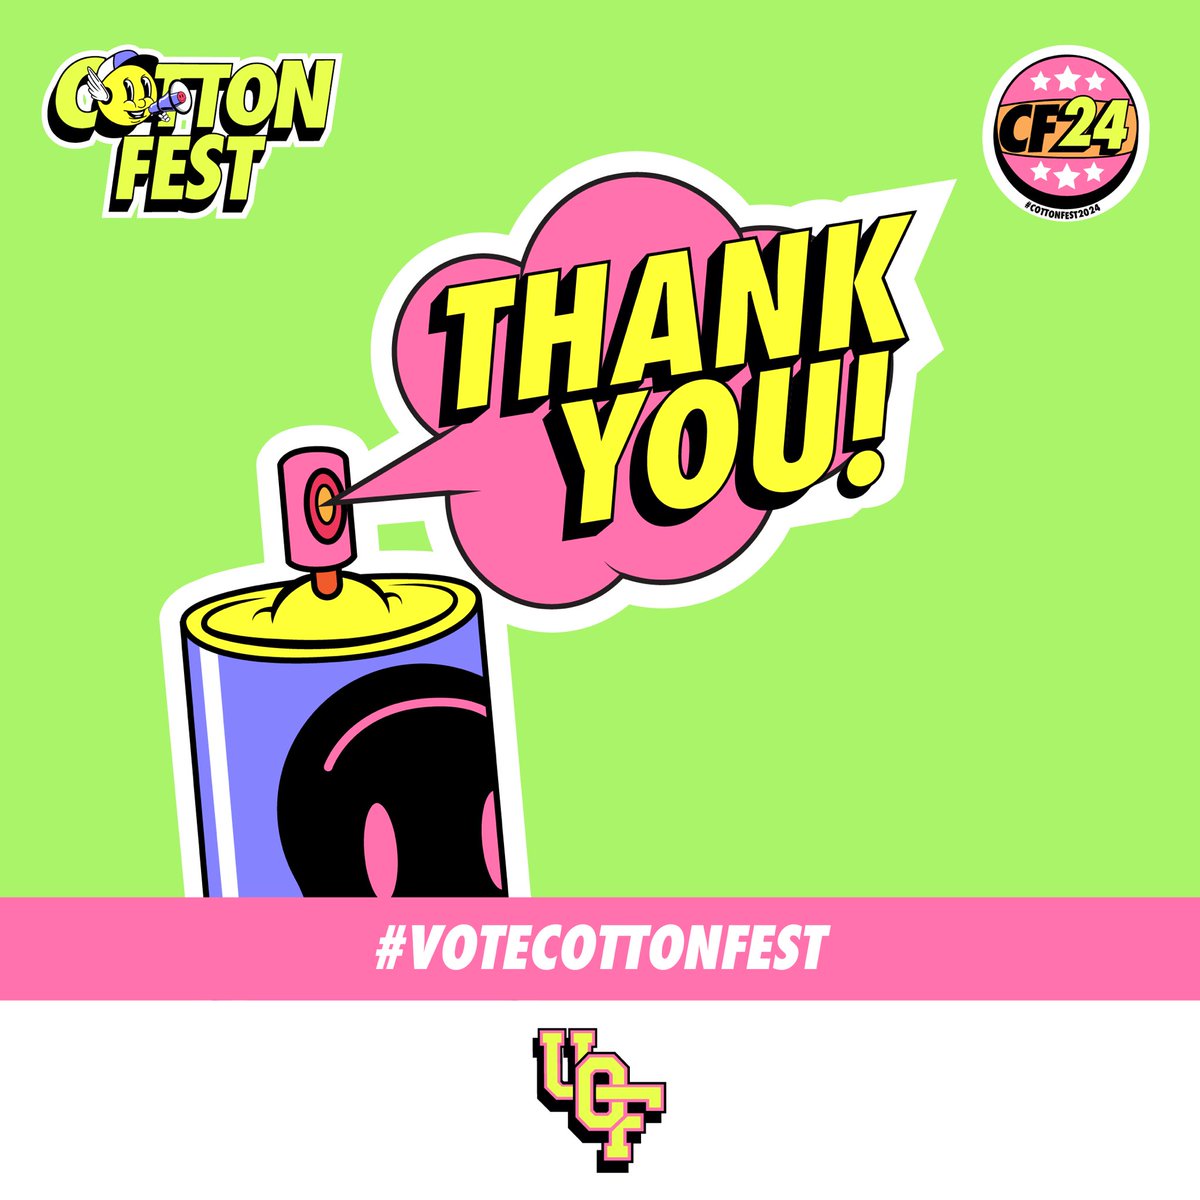 Joburg, the University of Cottonfest thanks you💛 #cottonfest #johannesburg #votecottonfest #votemusic #votelifestyle #votefashion #votesport #voteart